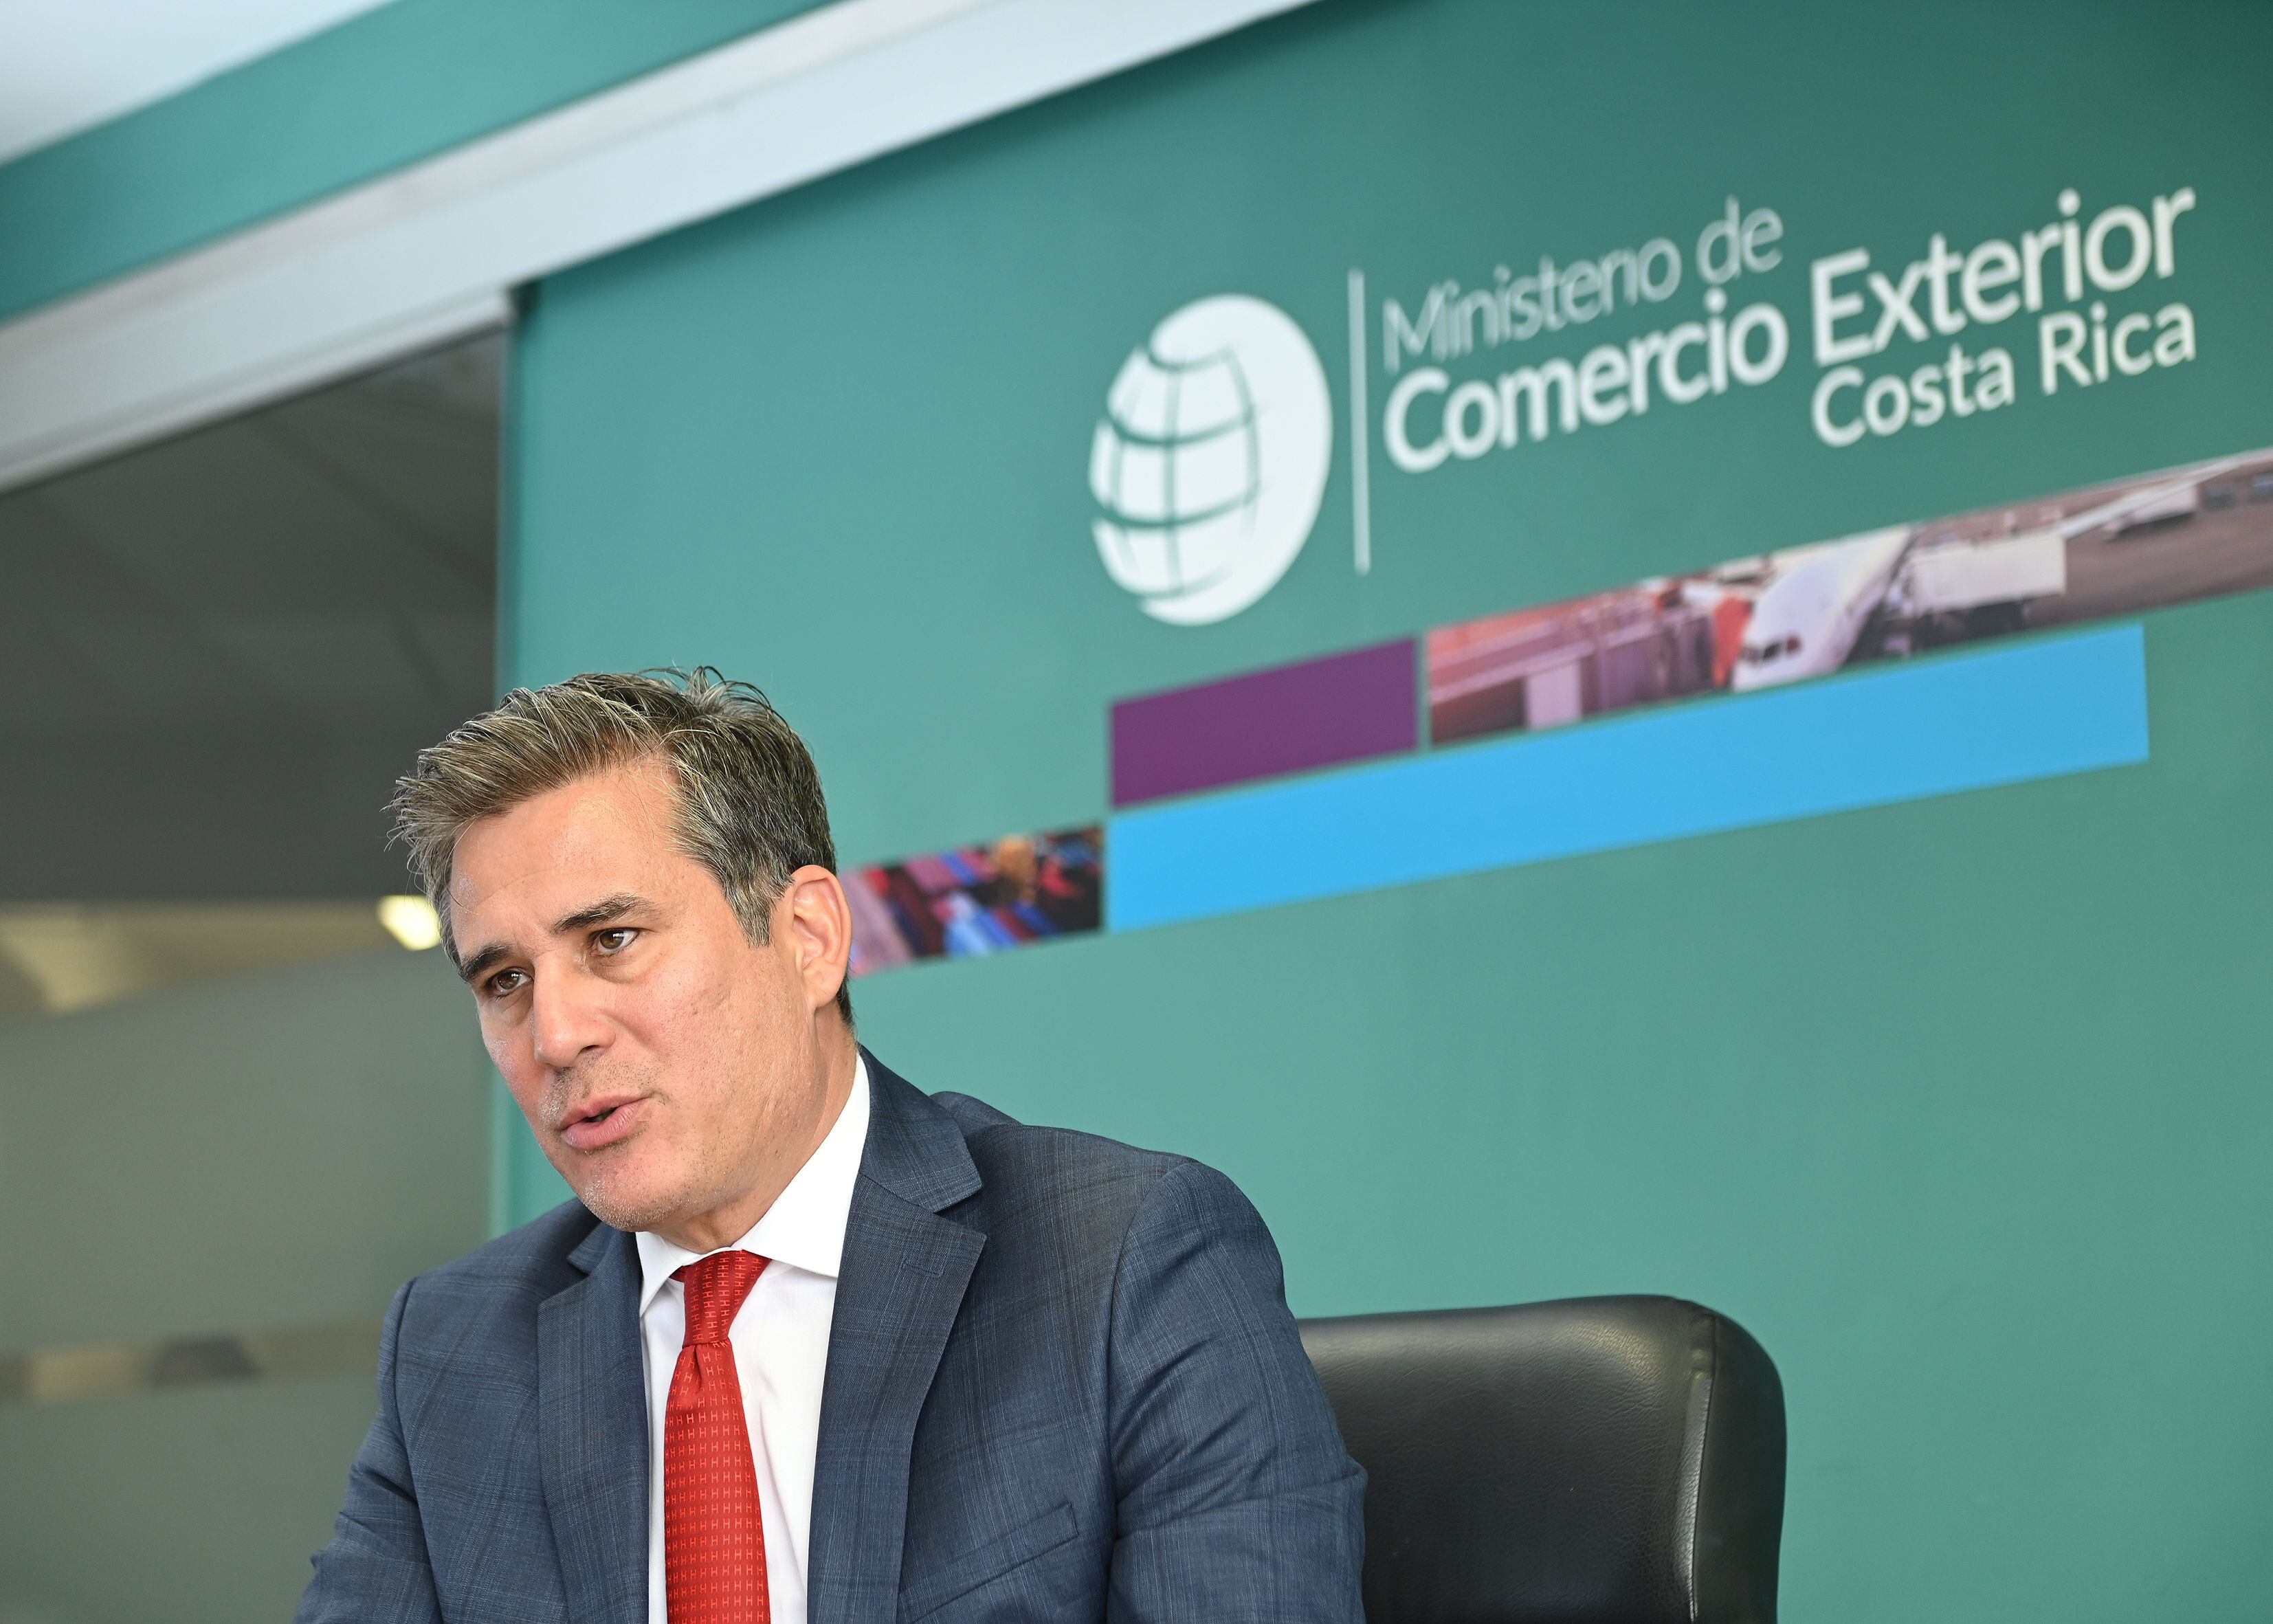 Manuel Tovar, ministro de Comercio Exterior, calificó la apreciación del tipo de cambio como una situación coyuntural que genera incertidumbre. Foto: Albert Marín para La Nación.